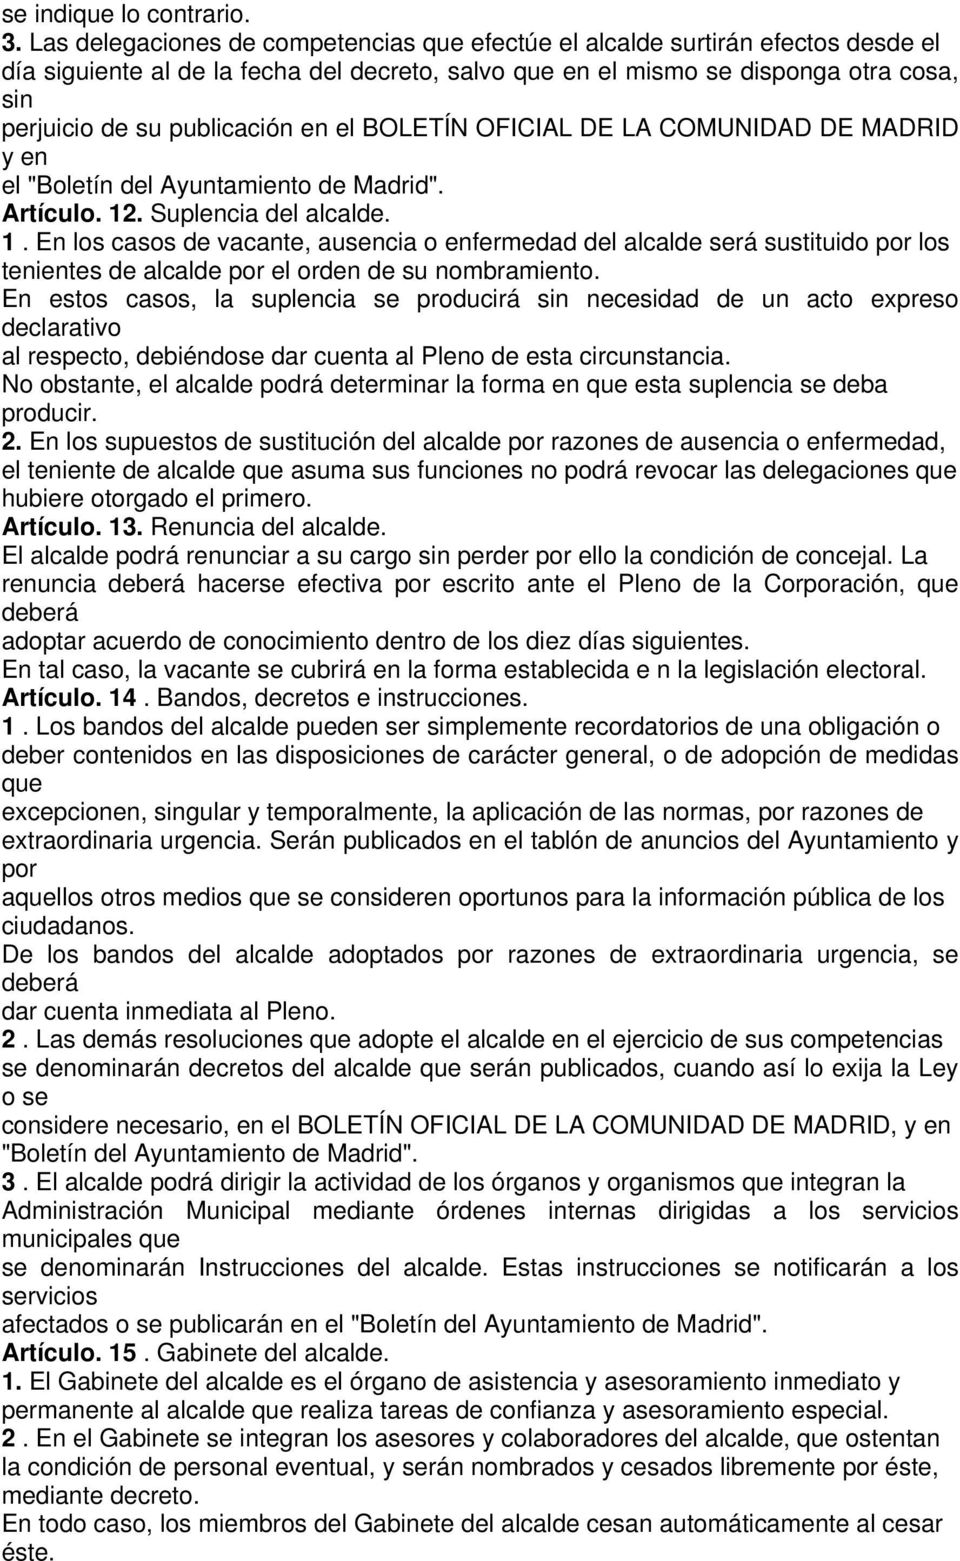 publicación en el BOLETÍN OFICIAL DE LA COMUNIDAD DE MADRID y en el "Boletín del Ayuntamiento de Madrid". Artículo. 12